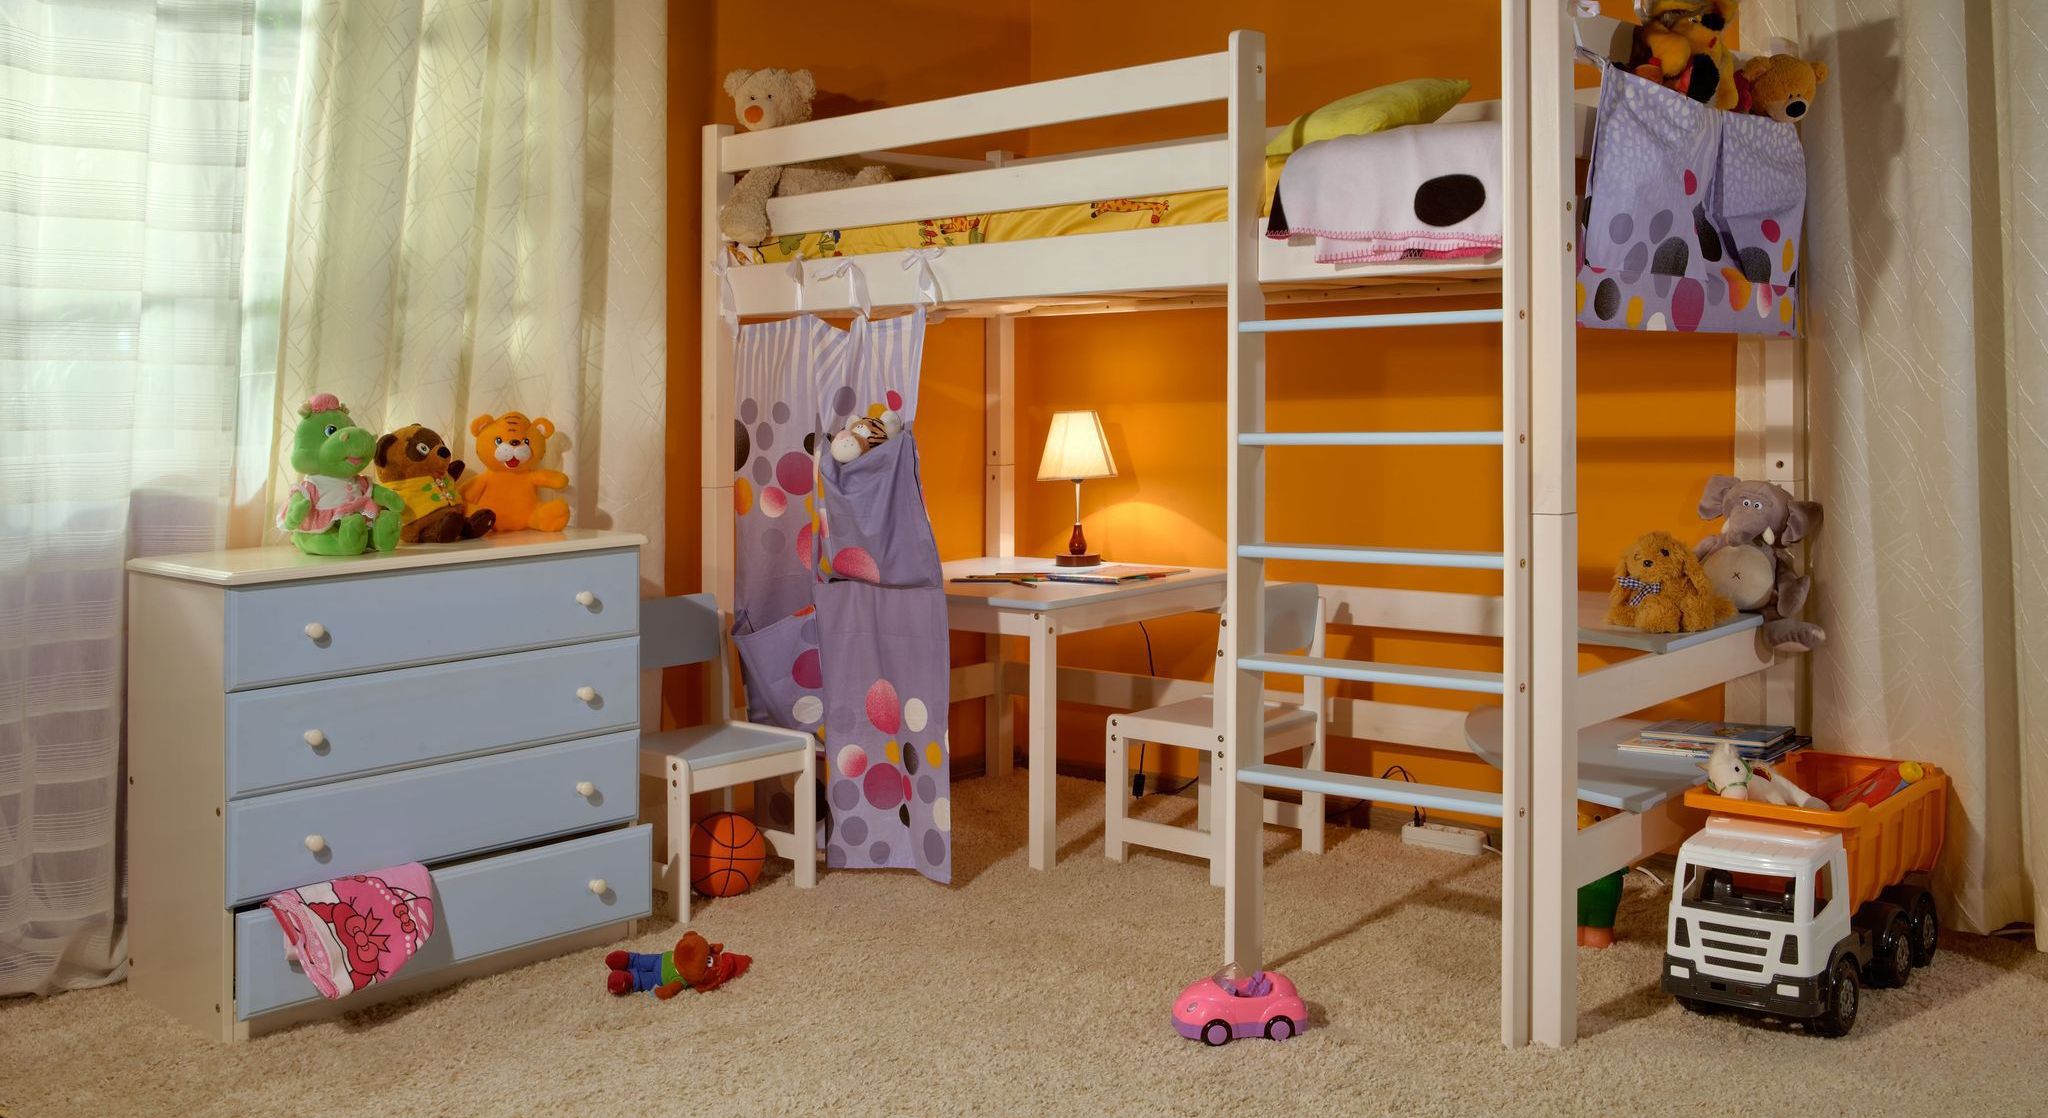 При выборе кровати-чердака для ребенка важно учитывать, что материалы должны отвечать всем требованиям безопасности